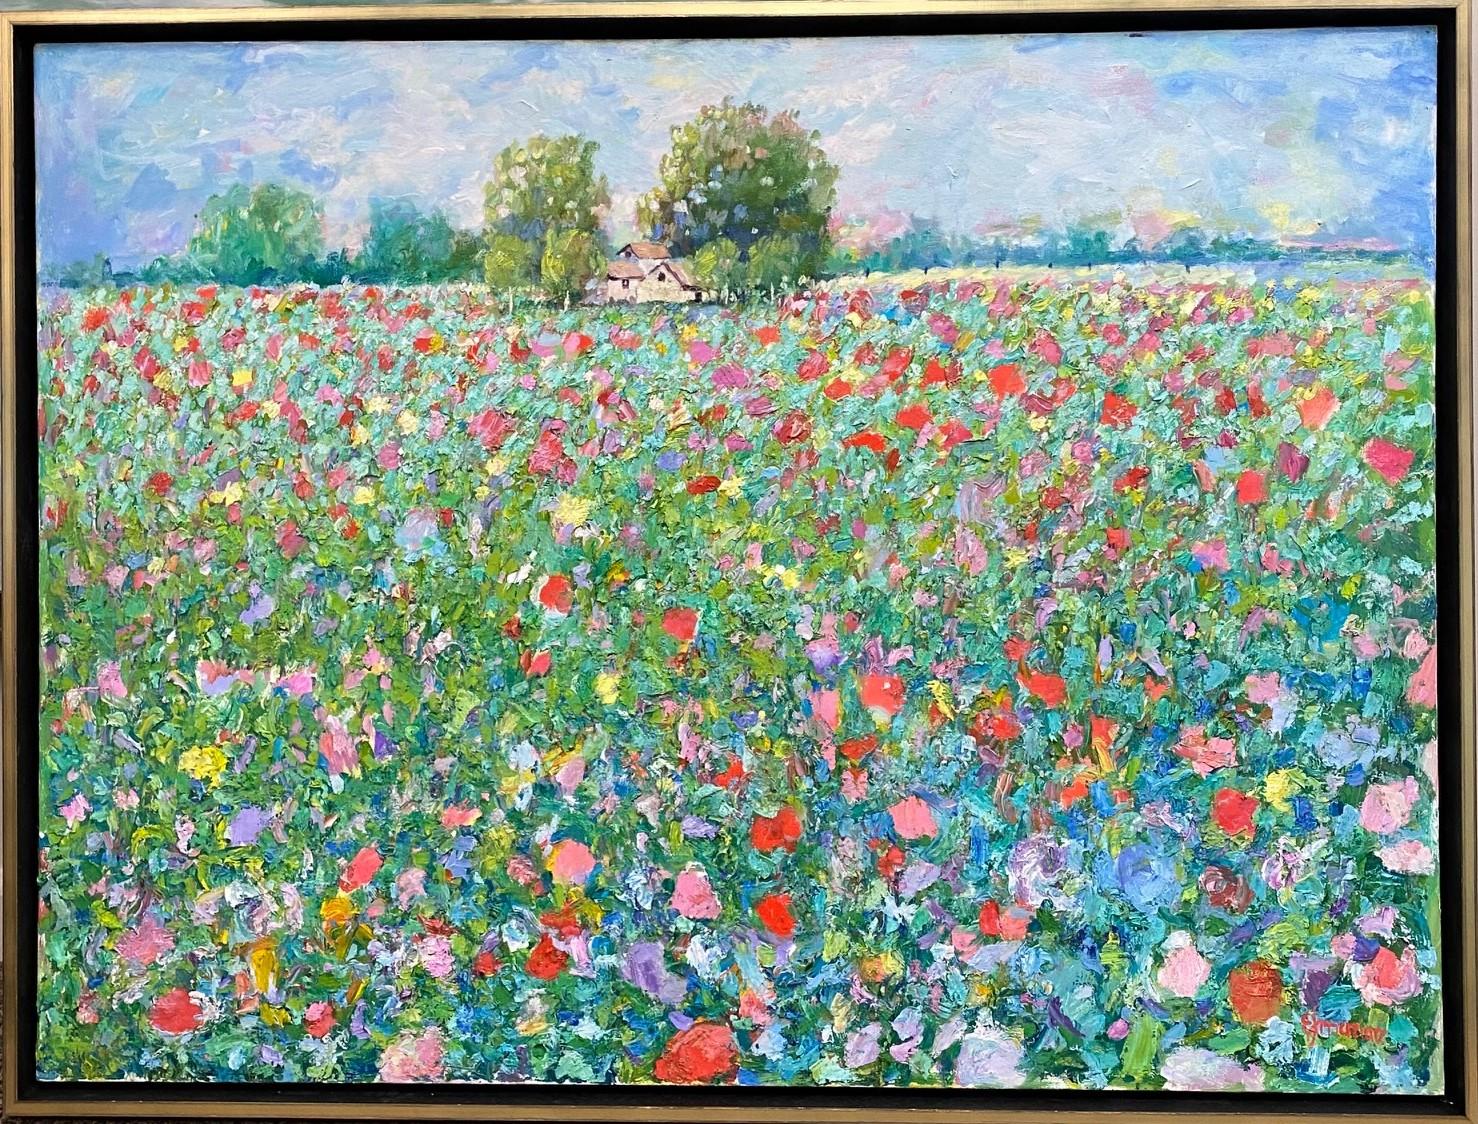 Landscape Painting Eugene Maziarz - Homestead of Flowers, paysage impressionniste français contemporain original 30x40